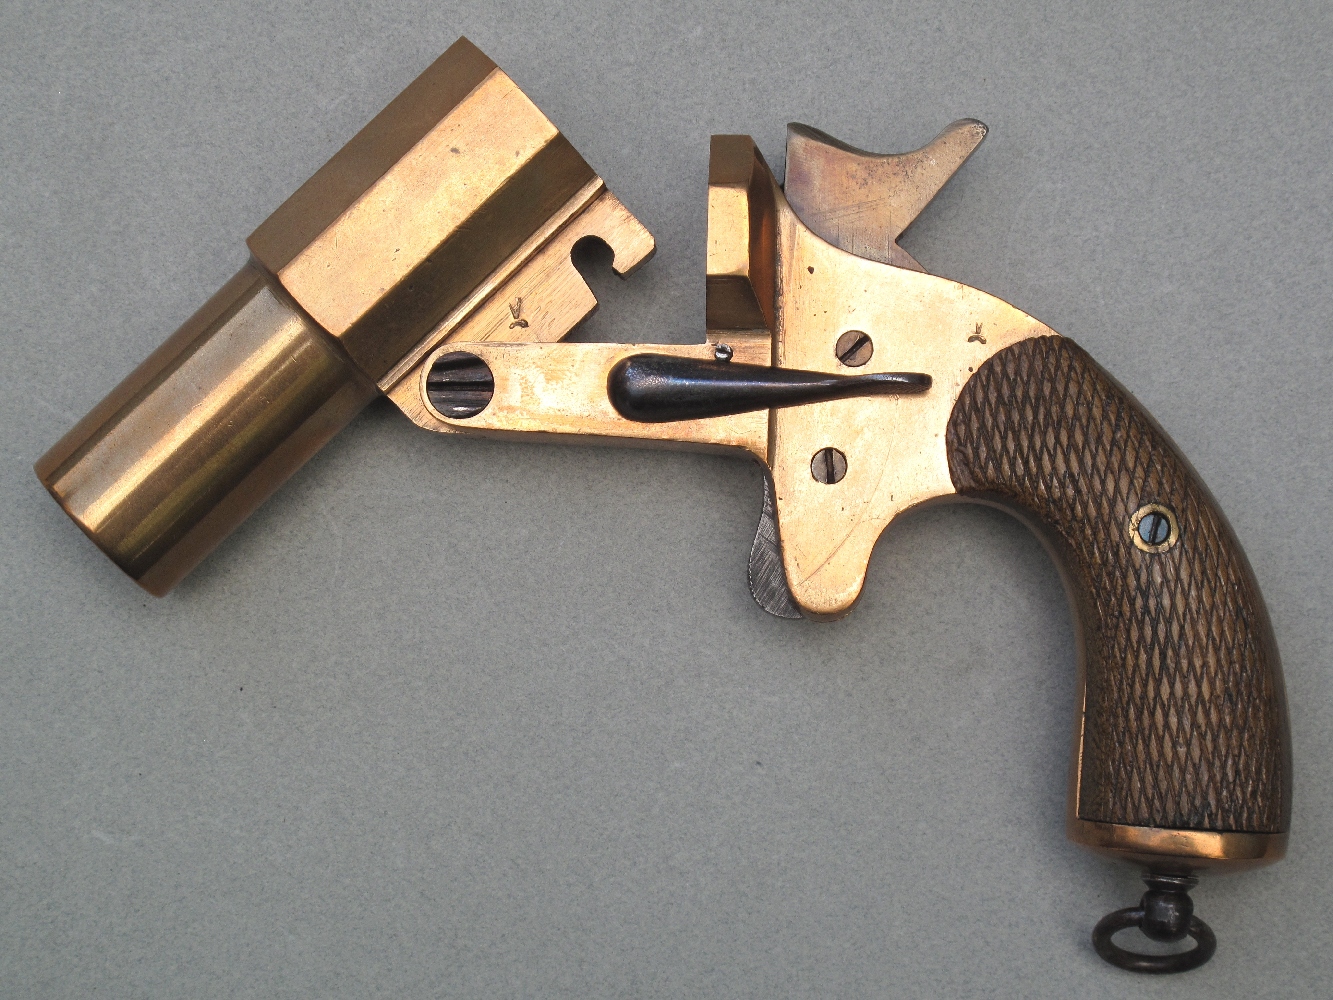 Le pistolet français est verrouillé par un simple tenon rotatif transversal, actionné au moyen d’une clé latérale.